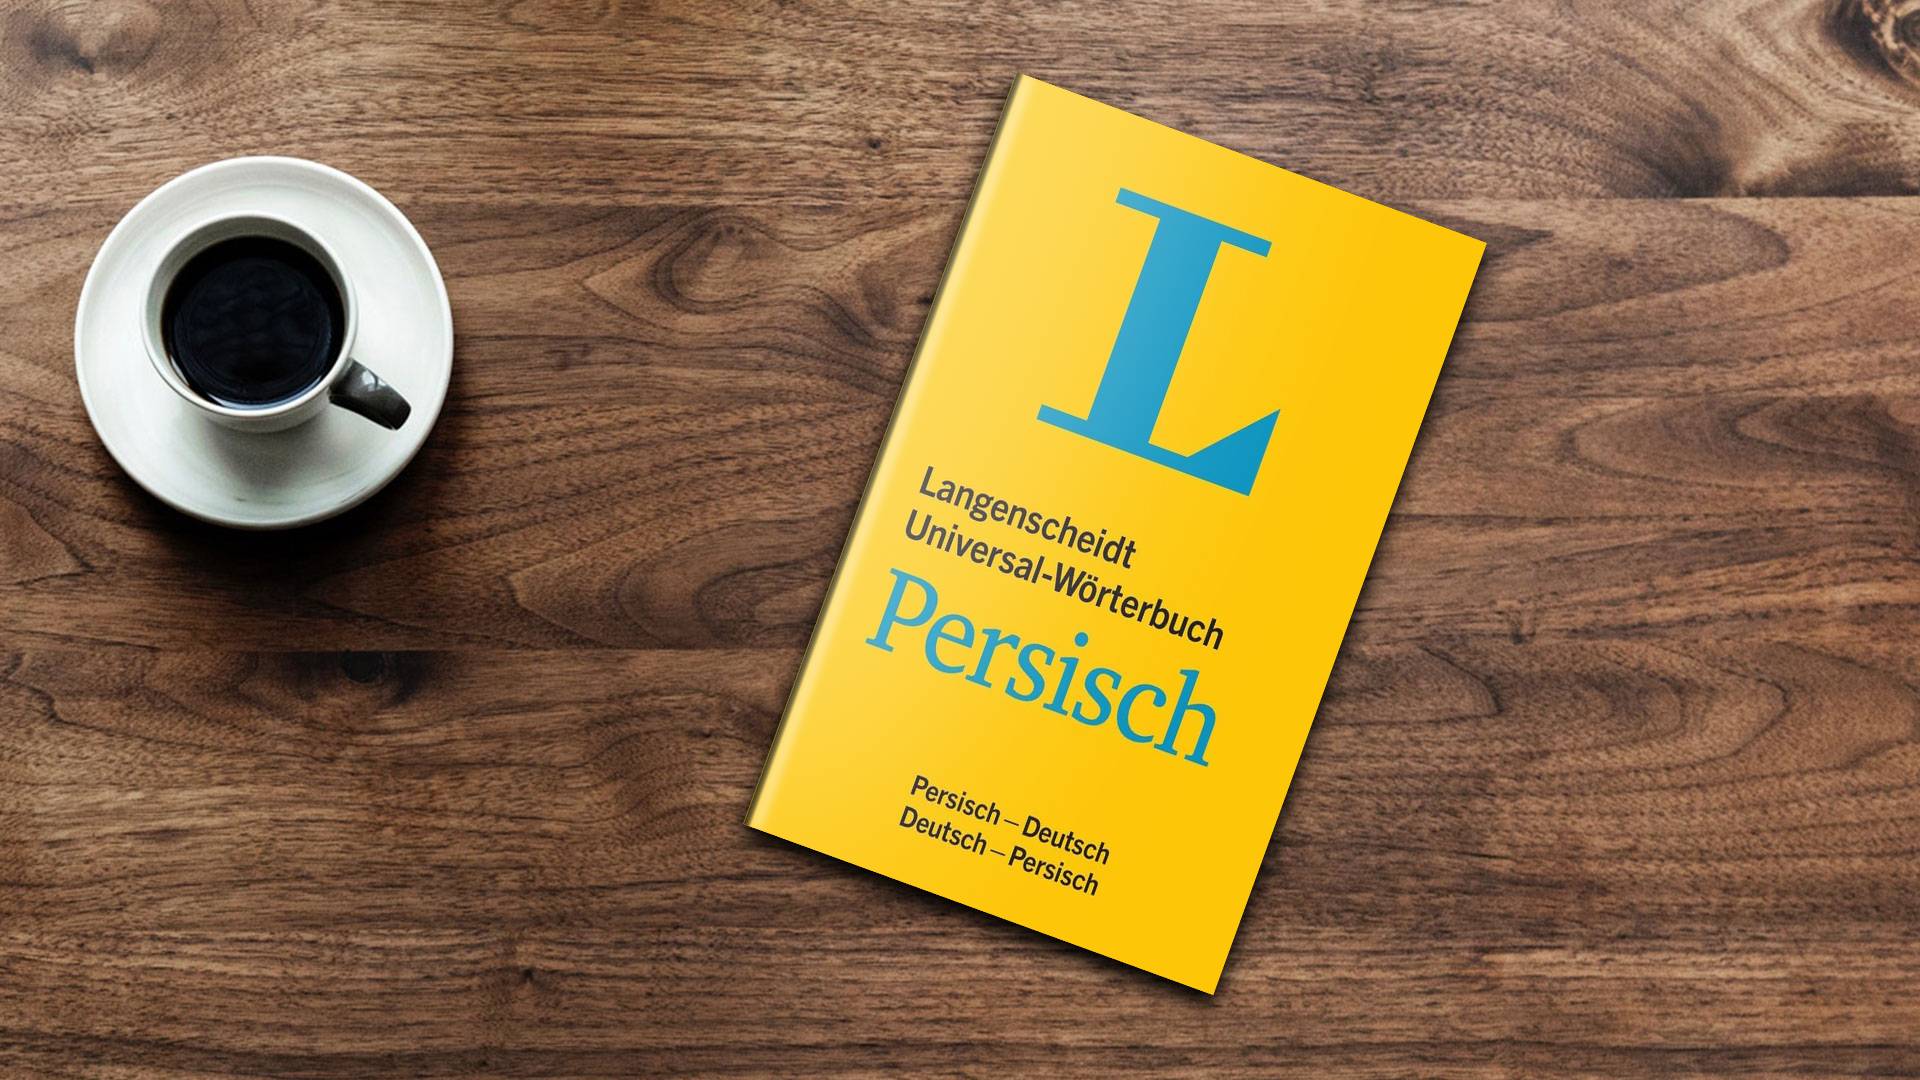 خرید کتاب زبان | زبان استور | Langenscheidt Universal-Wörterbuch Persisch | دیکشنری آلمانی فارسی